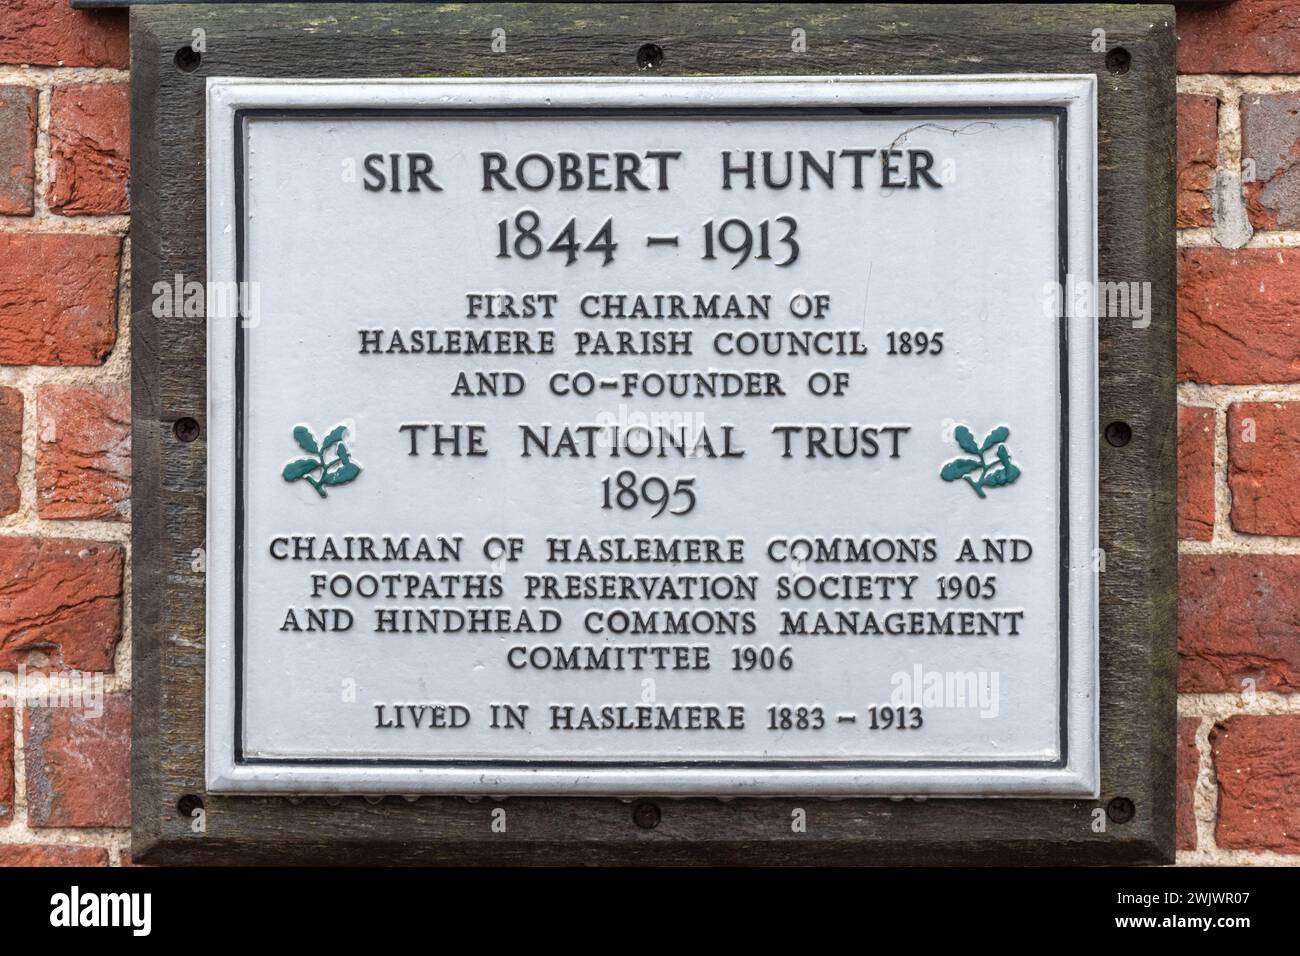 Targa commemorativa di Sir Robert Hunter primo presidente del Haslemere Parish Council e cofondatore del National Trust nel 1895, Surrey, Inghilterra, Regno Unito Foto Stock